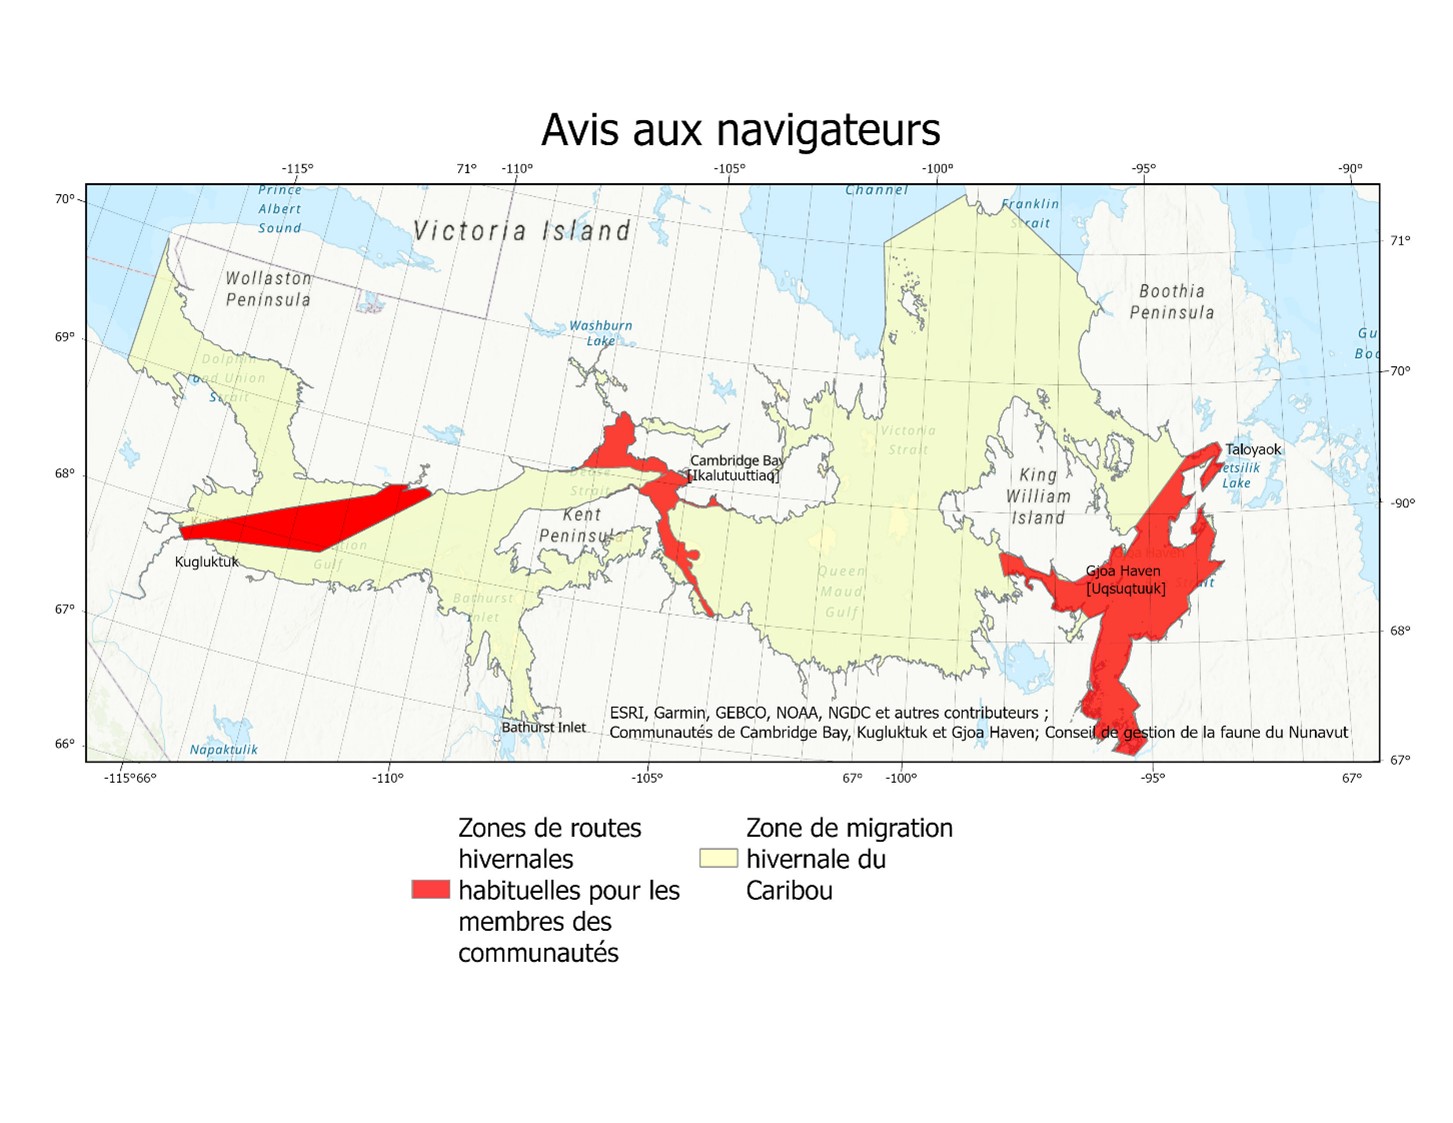 Carte de la région du Kitikmeot indiquant la zone de migration sur la banquise des caribous en jaune et les zones de voyagement sur la banquise des membres des communautés en rouge. 